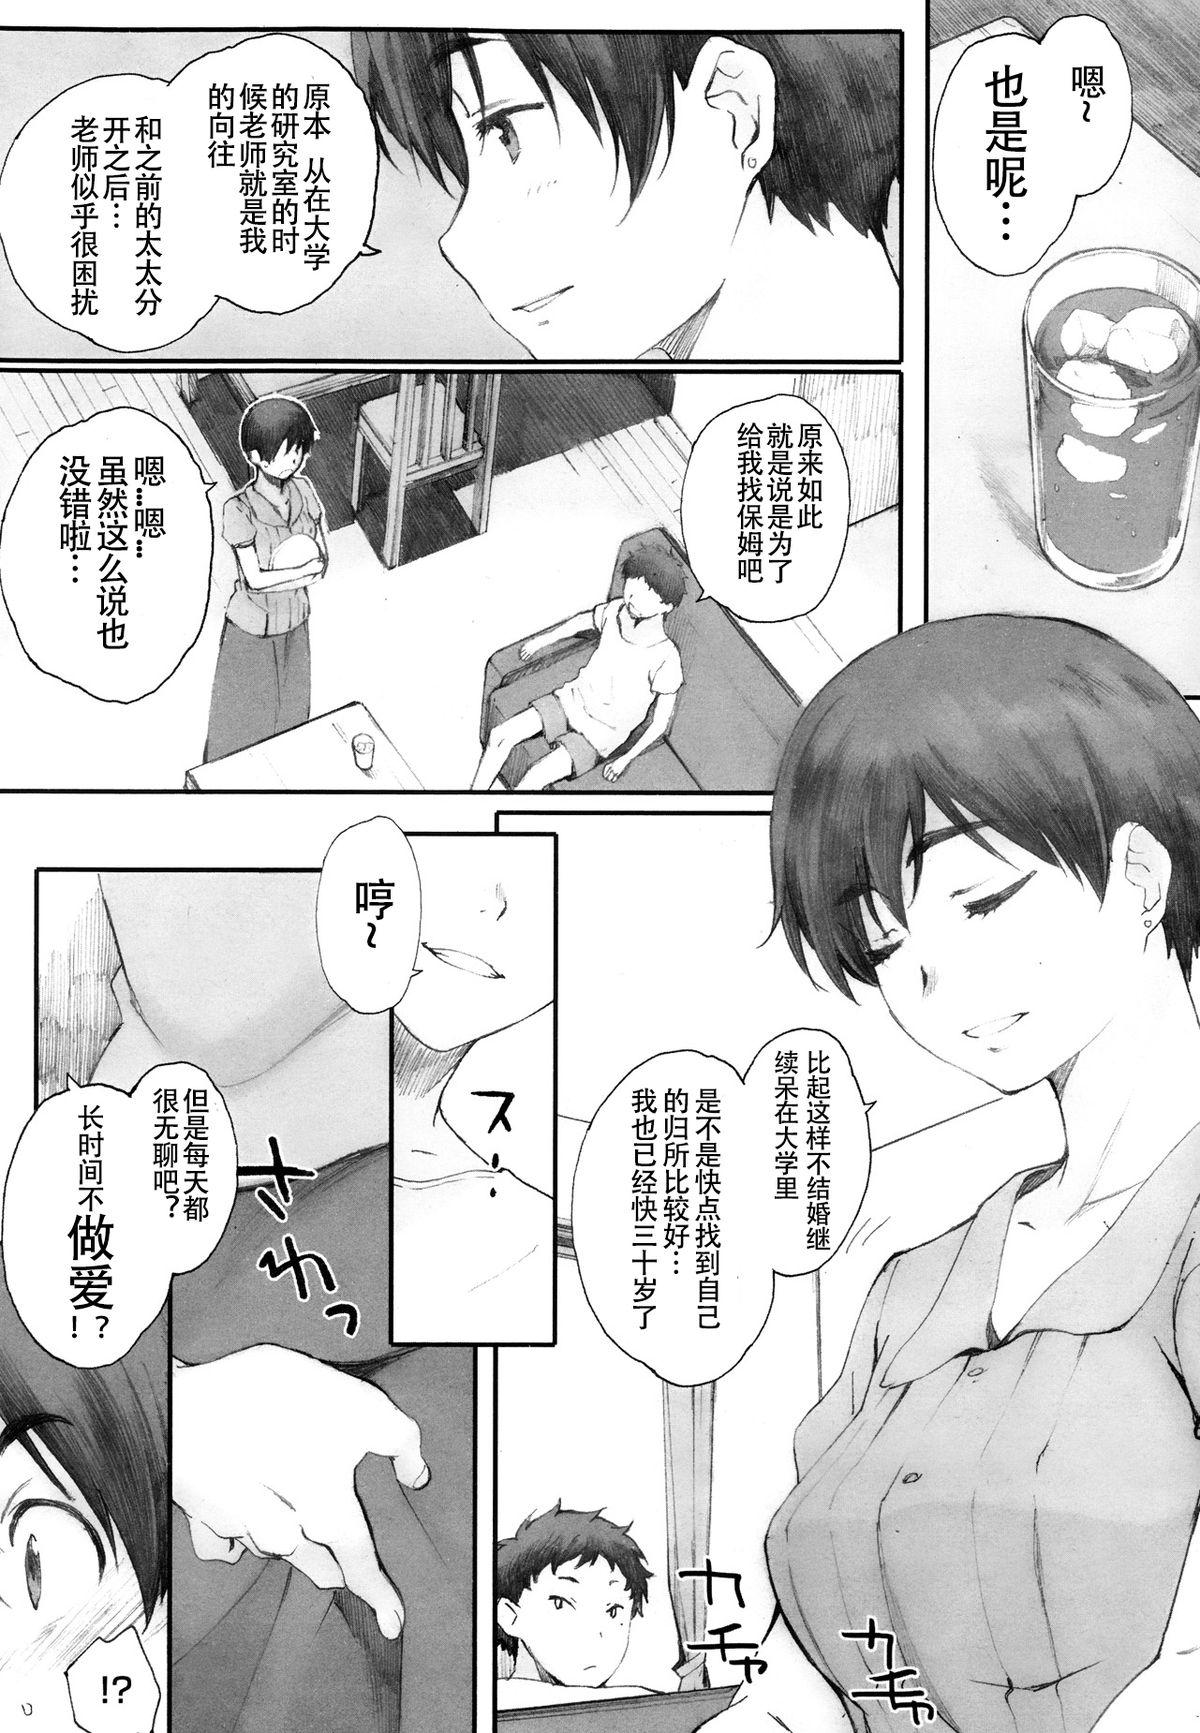 Mamando Kamakiri no su Humiliation - Page 5